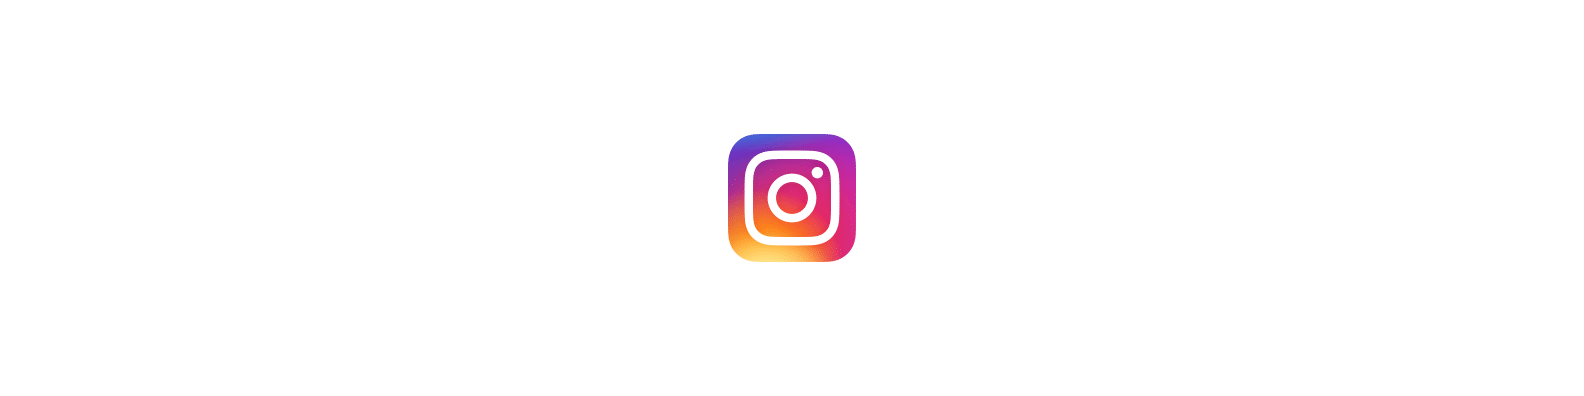 Intro_Instagram